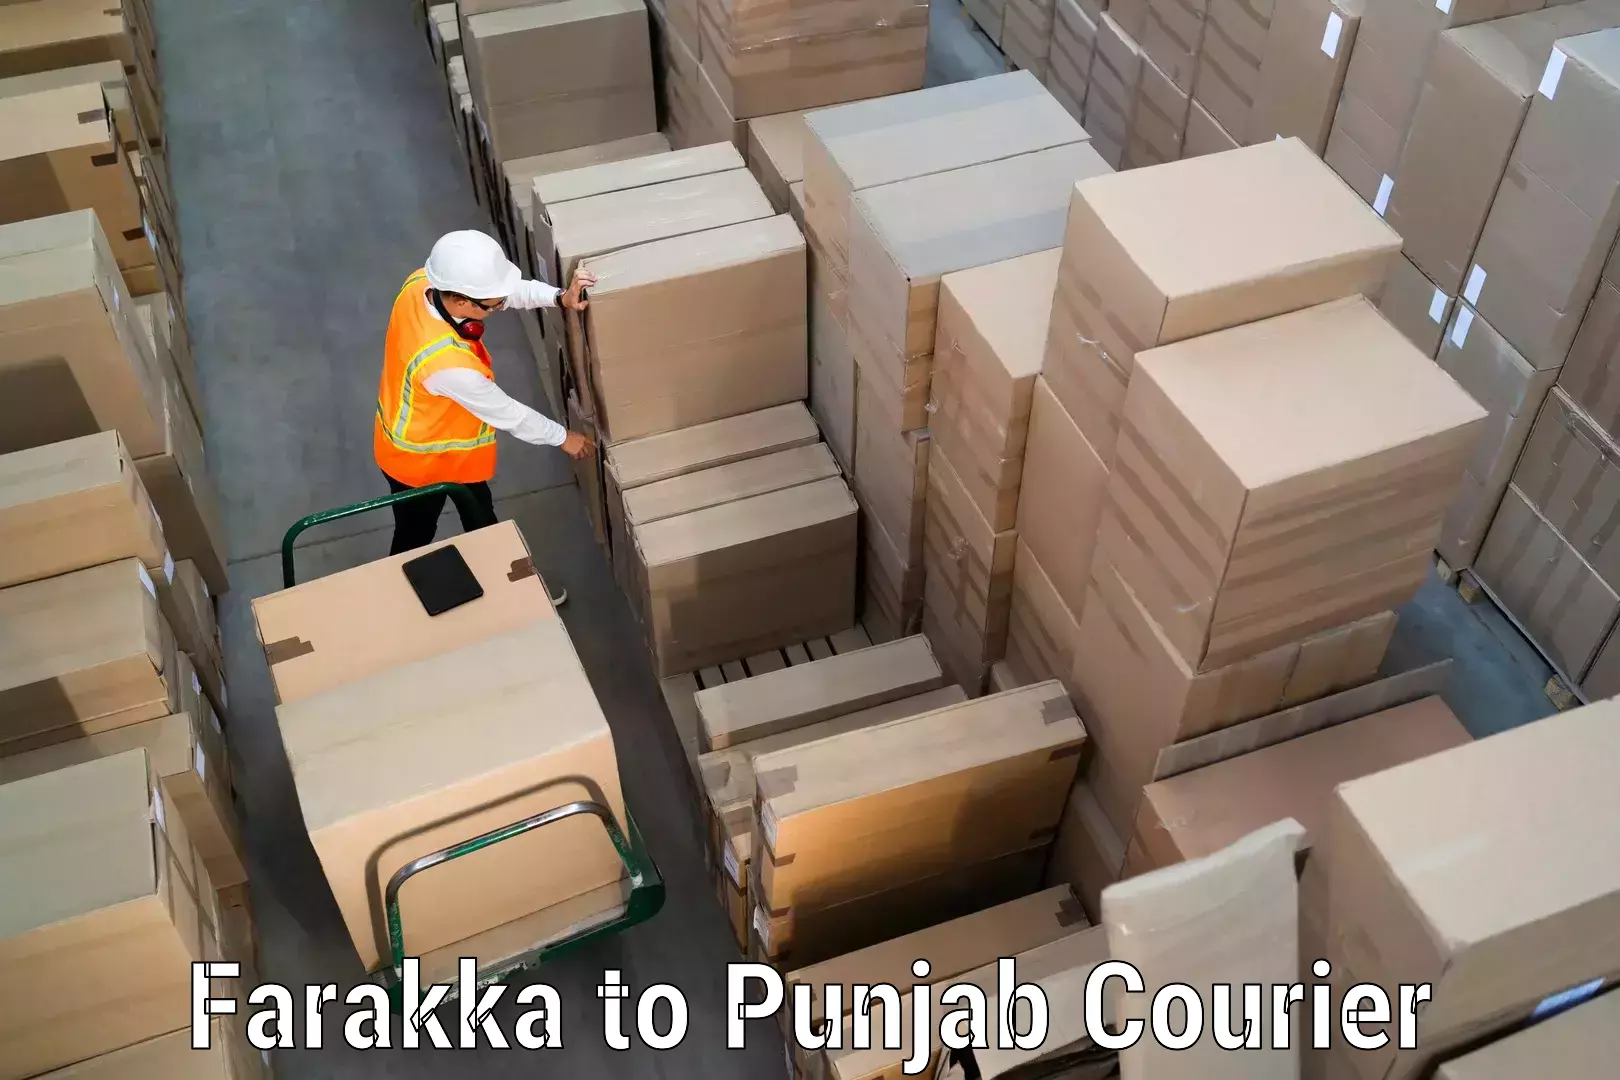 Tracking updates in Farakka to Punjab